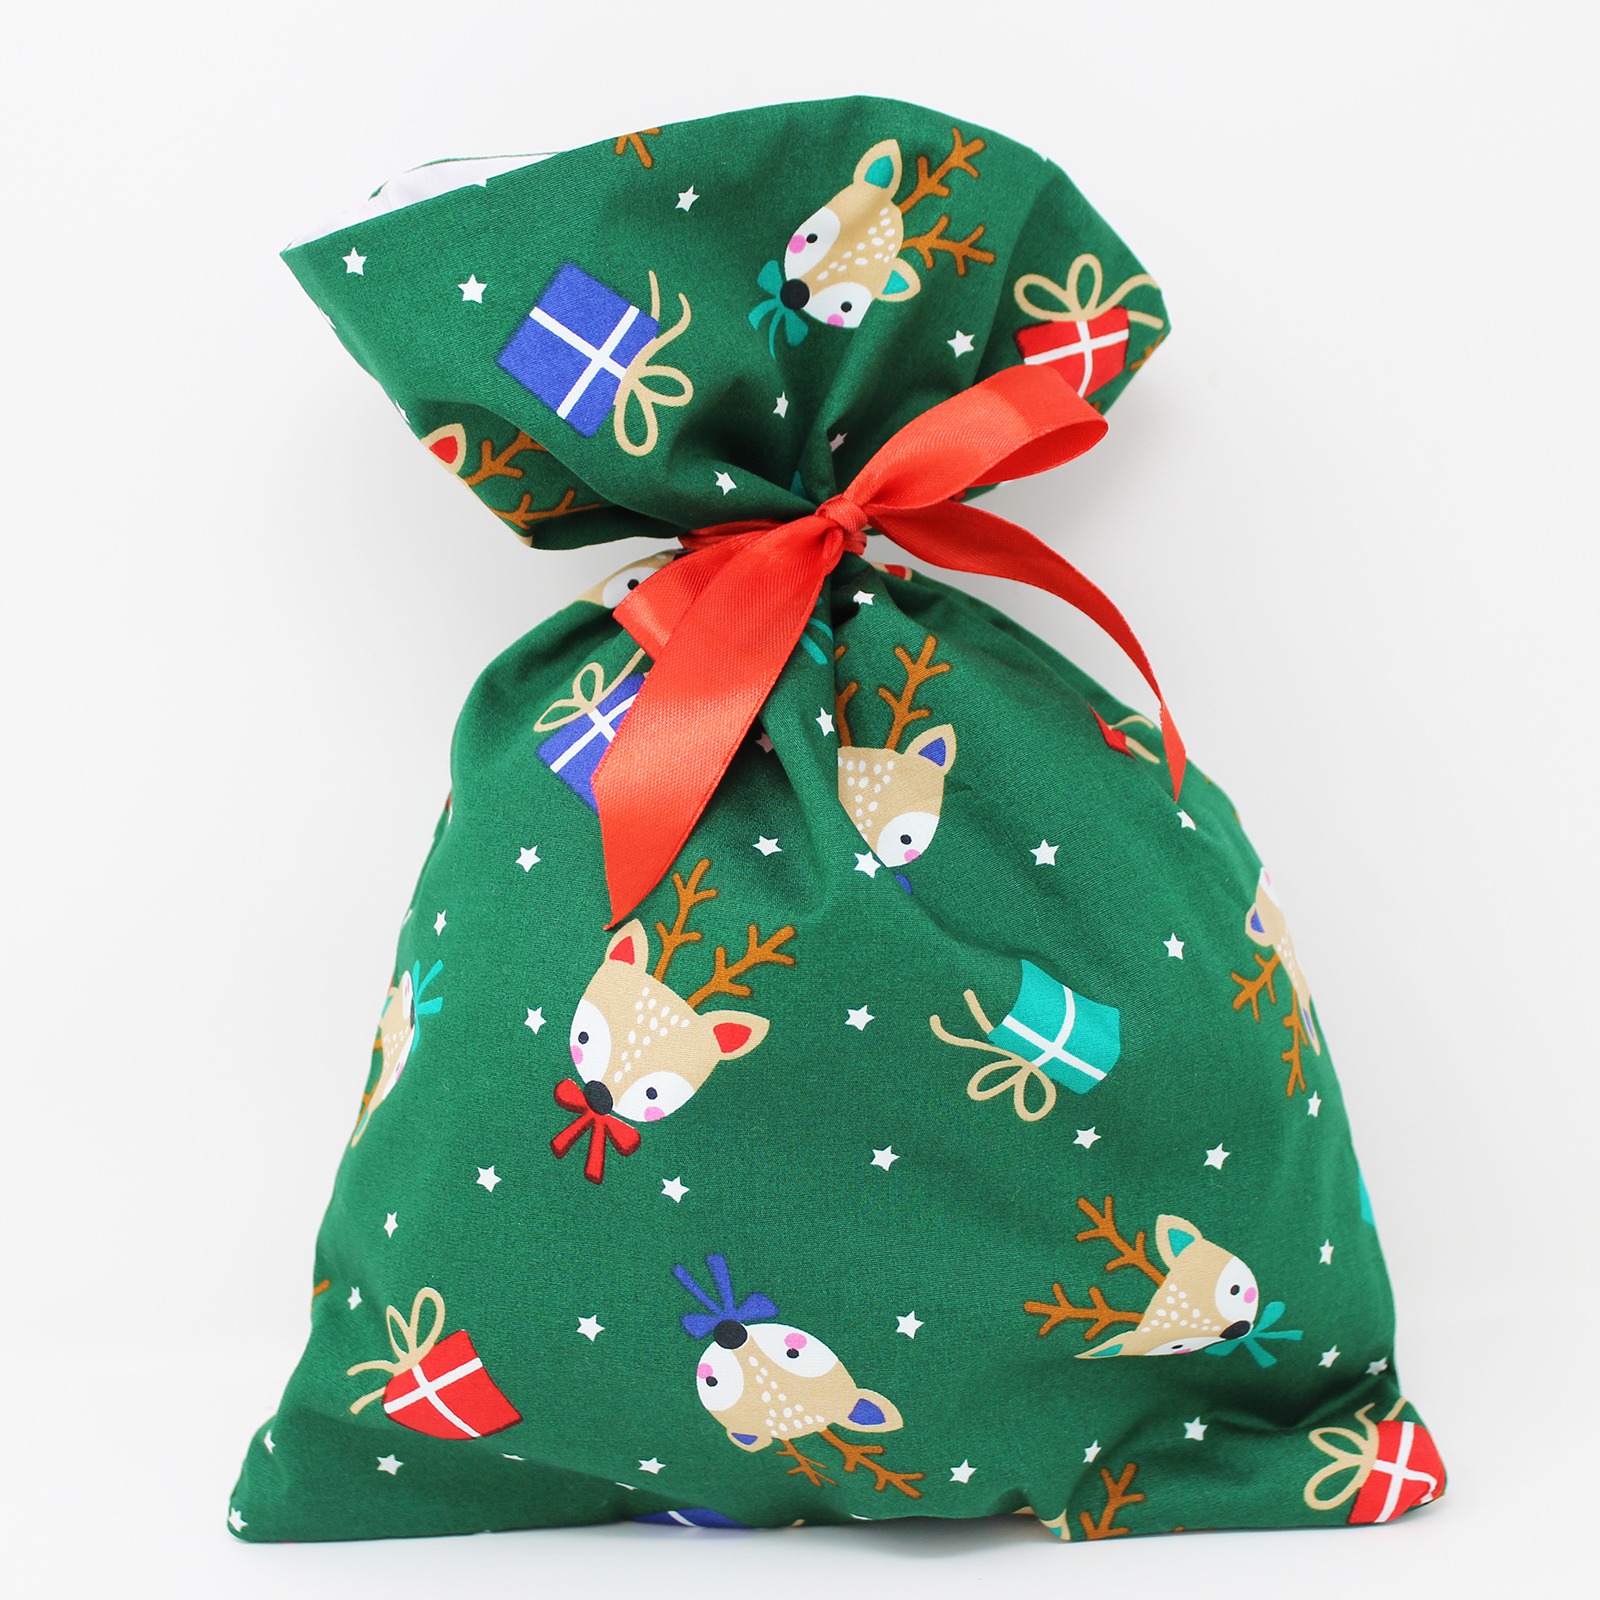 Reusable Christmas Fabric Gift Bags - Reindeer and Present Print